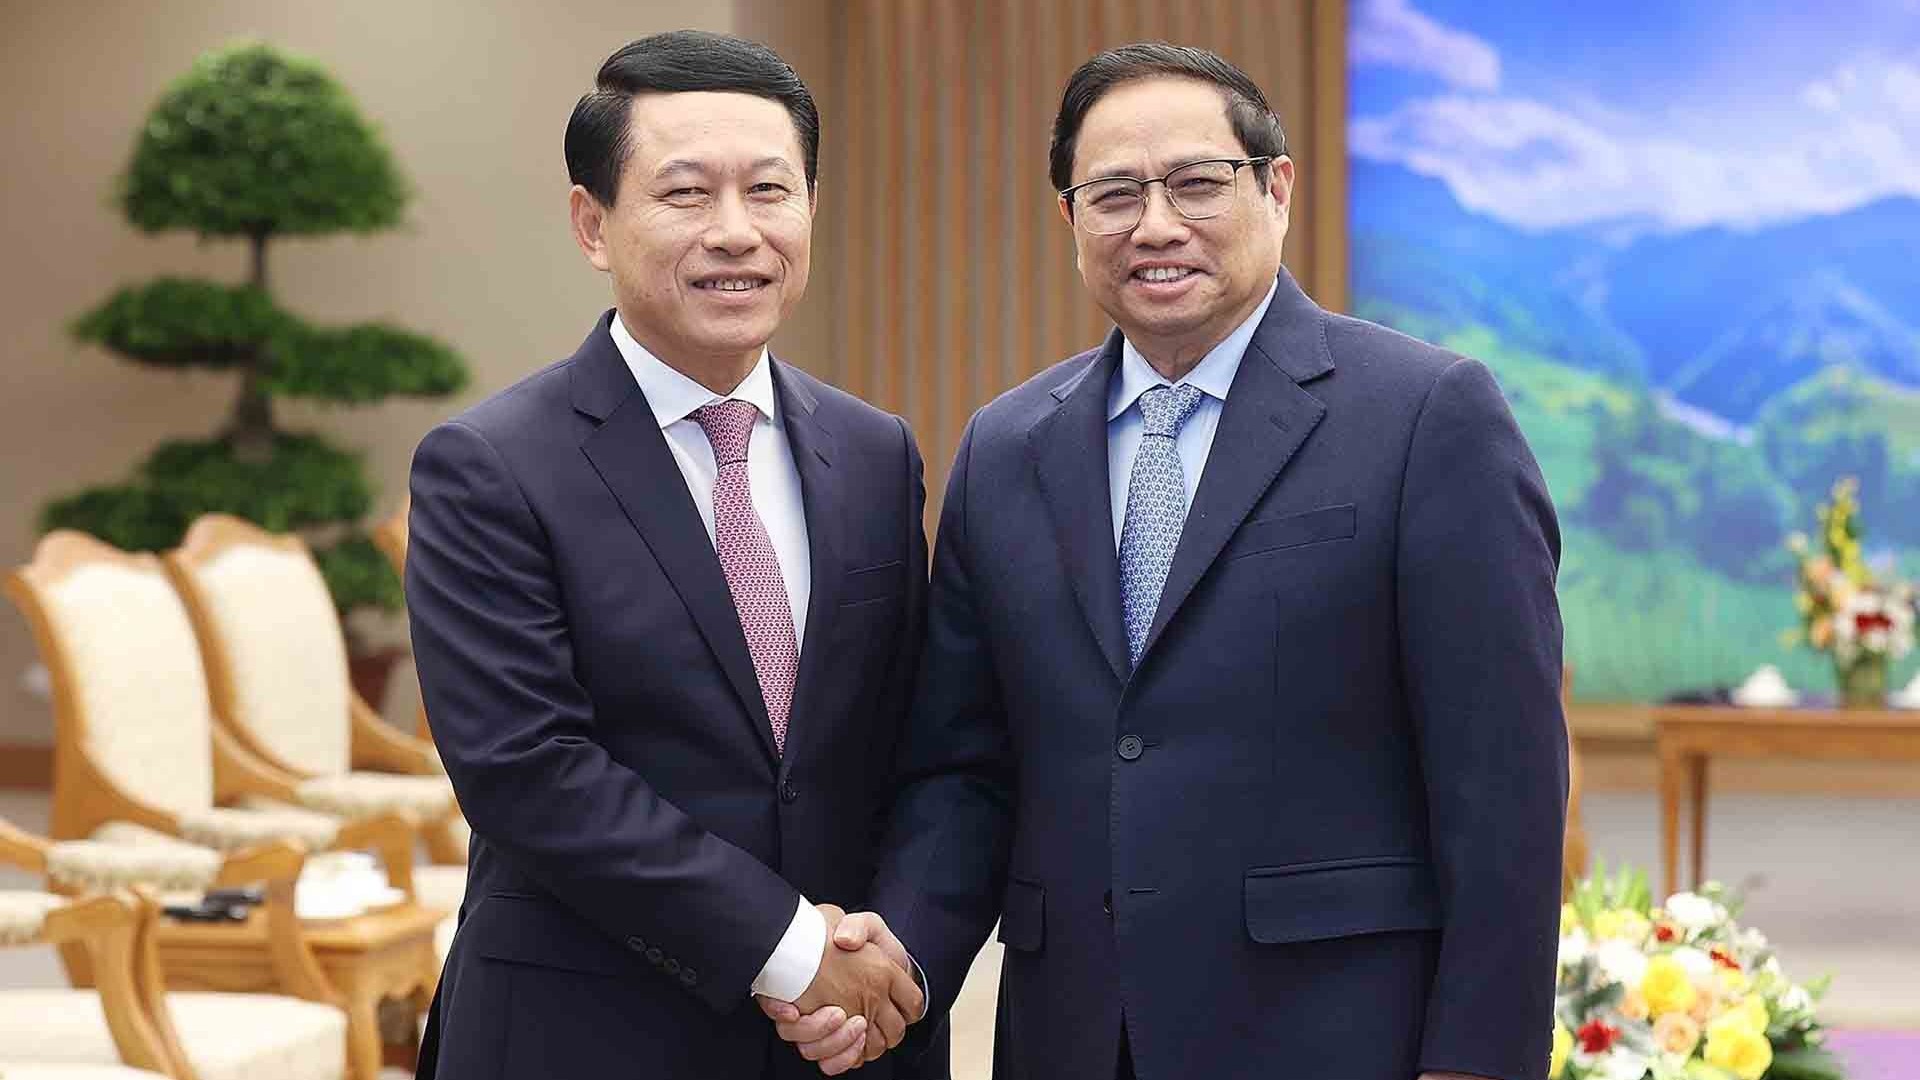 Thủ tướng Phạm Minh Chính tiếp Phó Thủ tướng, Bộ trưởng Ngoại giao Lào Saleumxay Kommasith